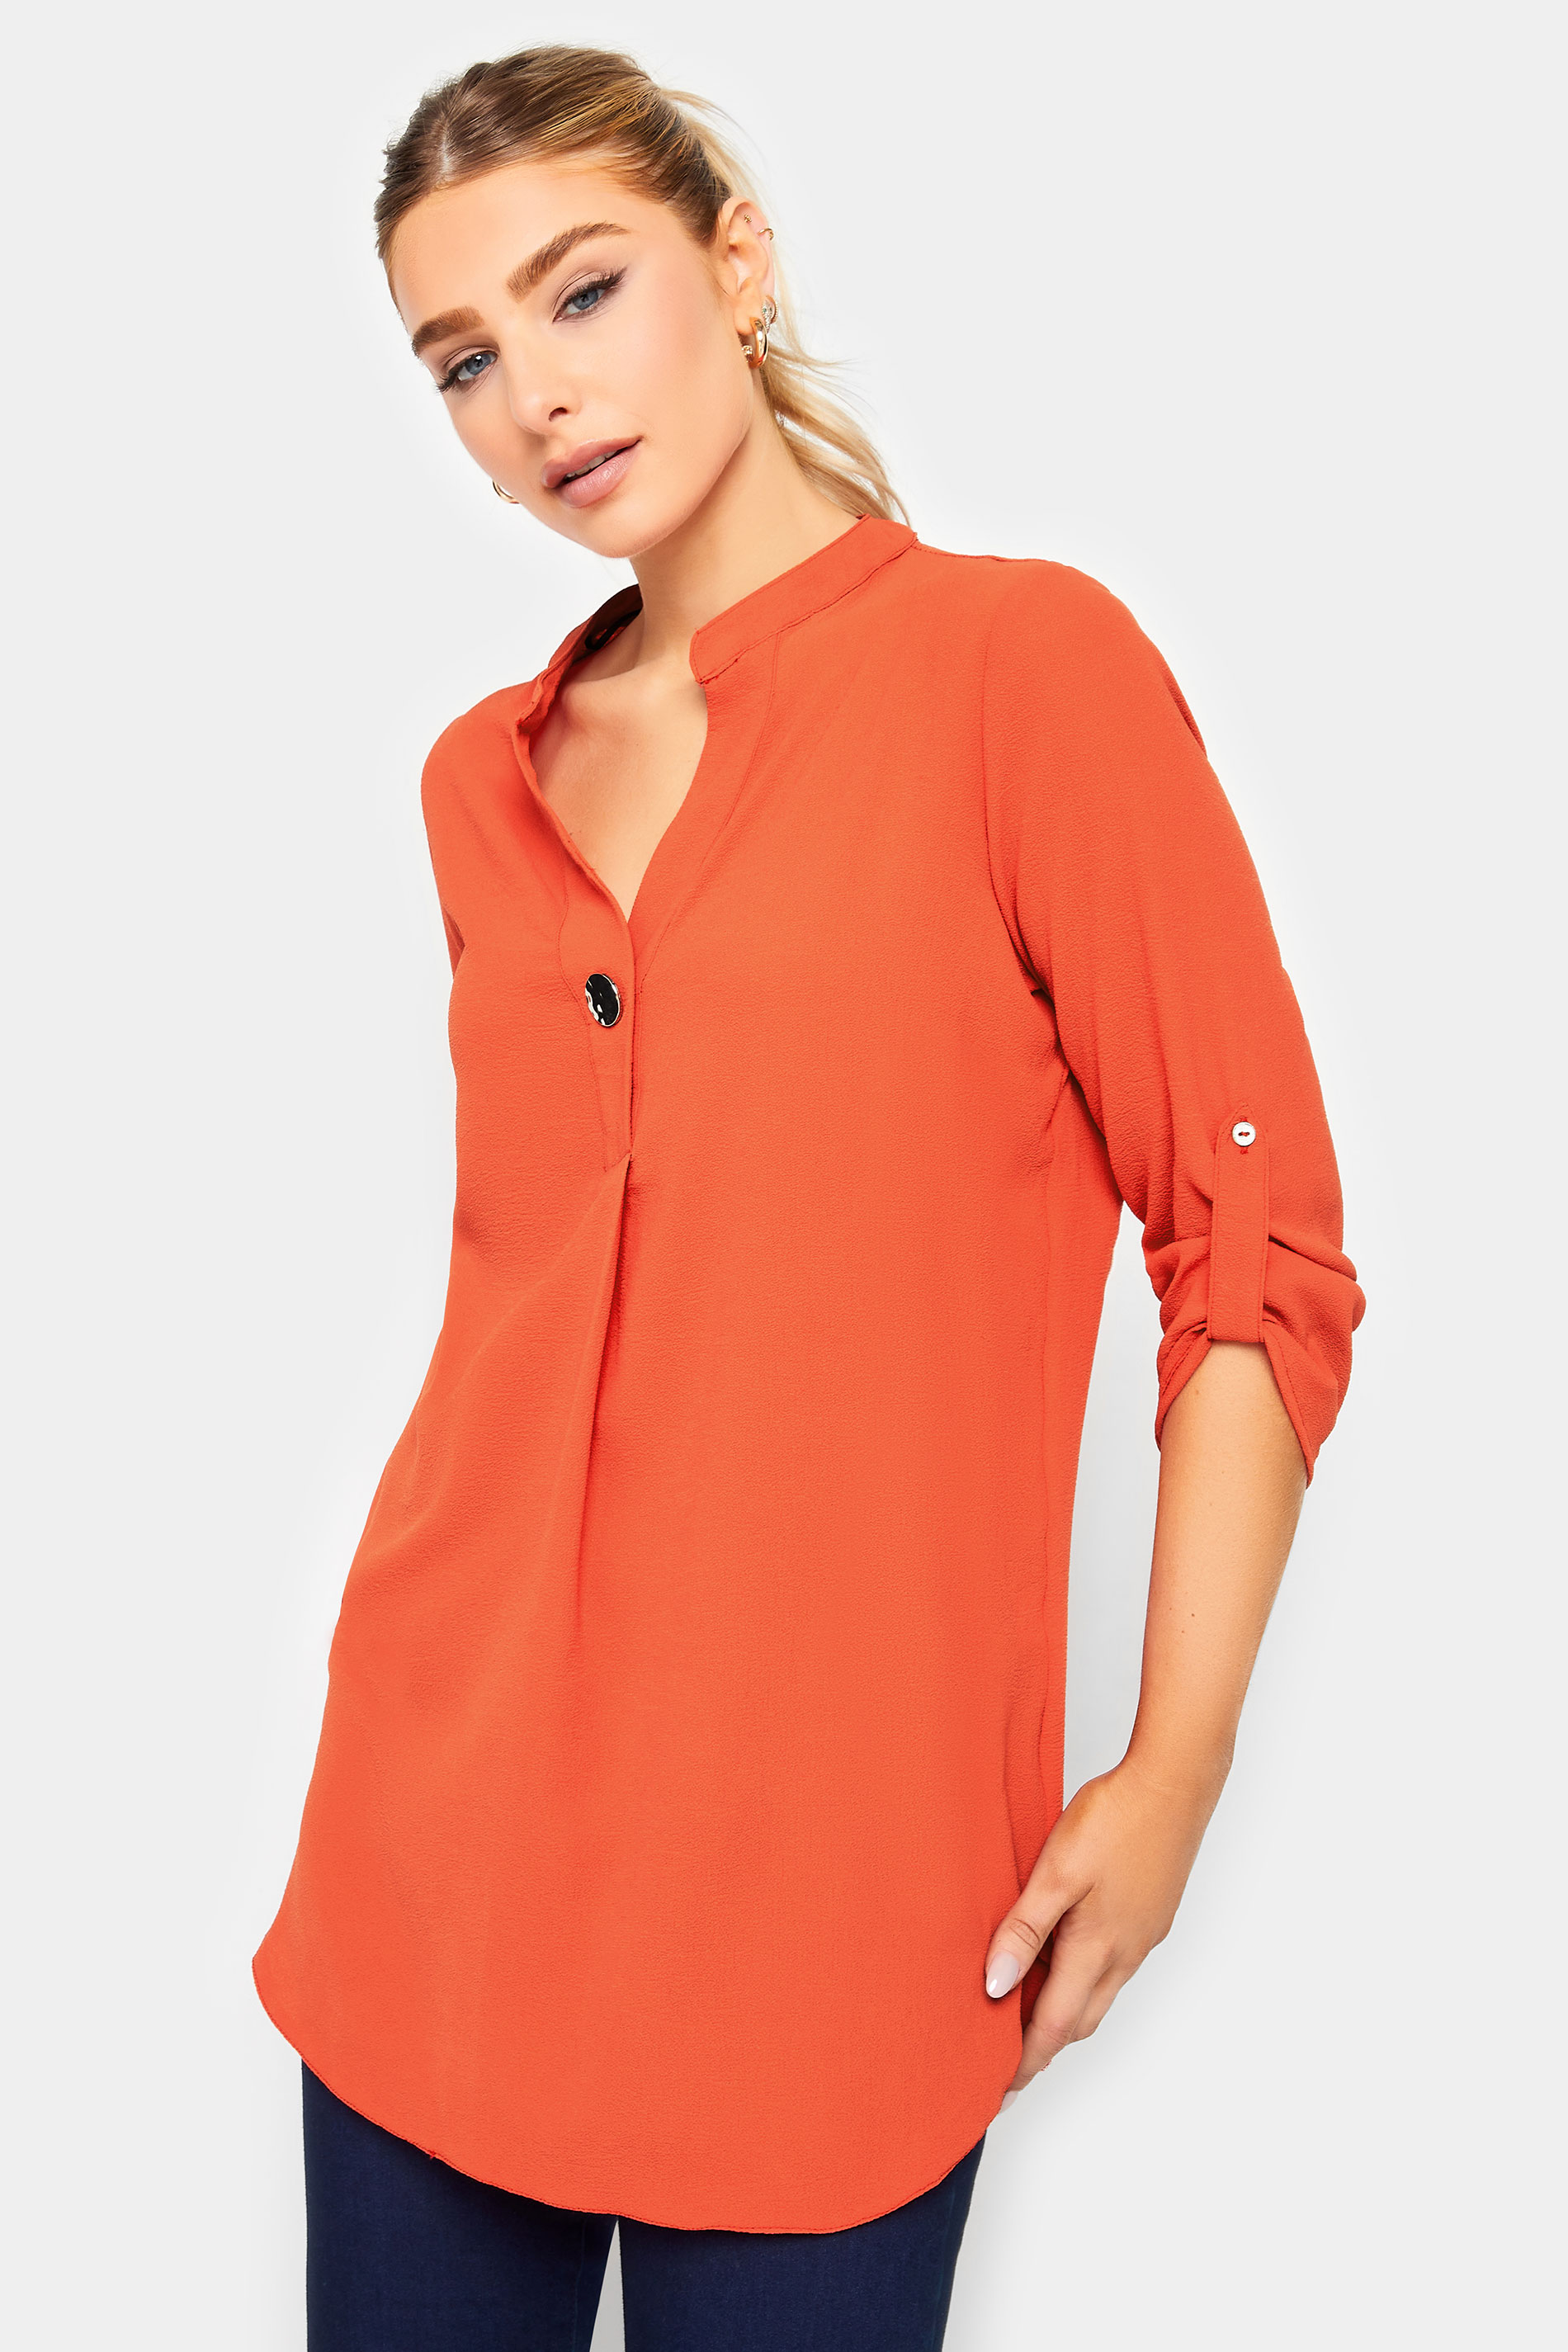 M&Co Orange Long Sleeve Button Blouse | M&Co  1